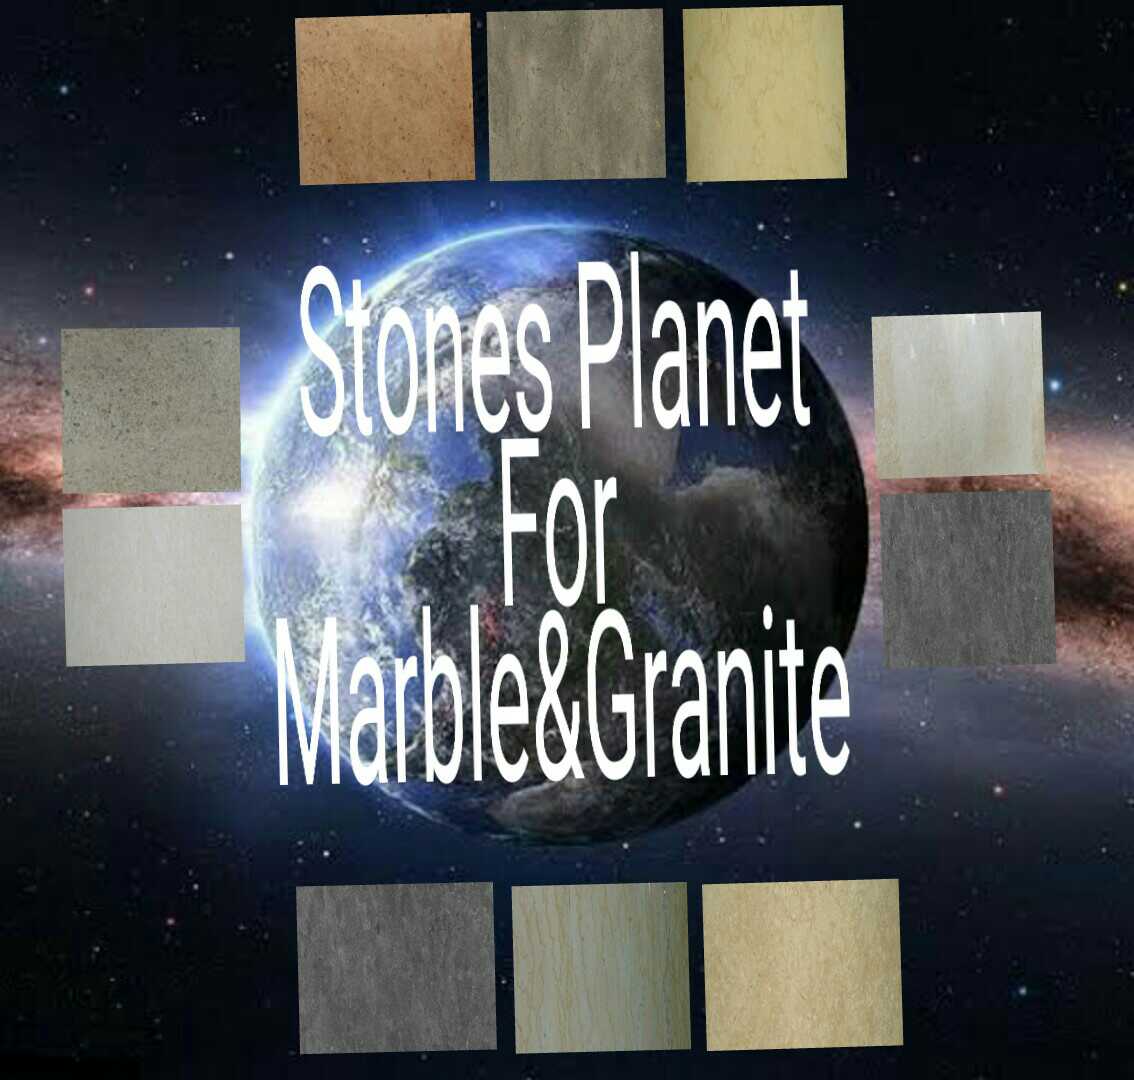 Stones Planet